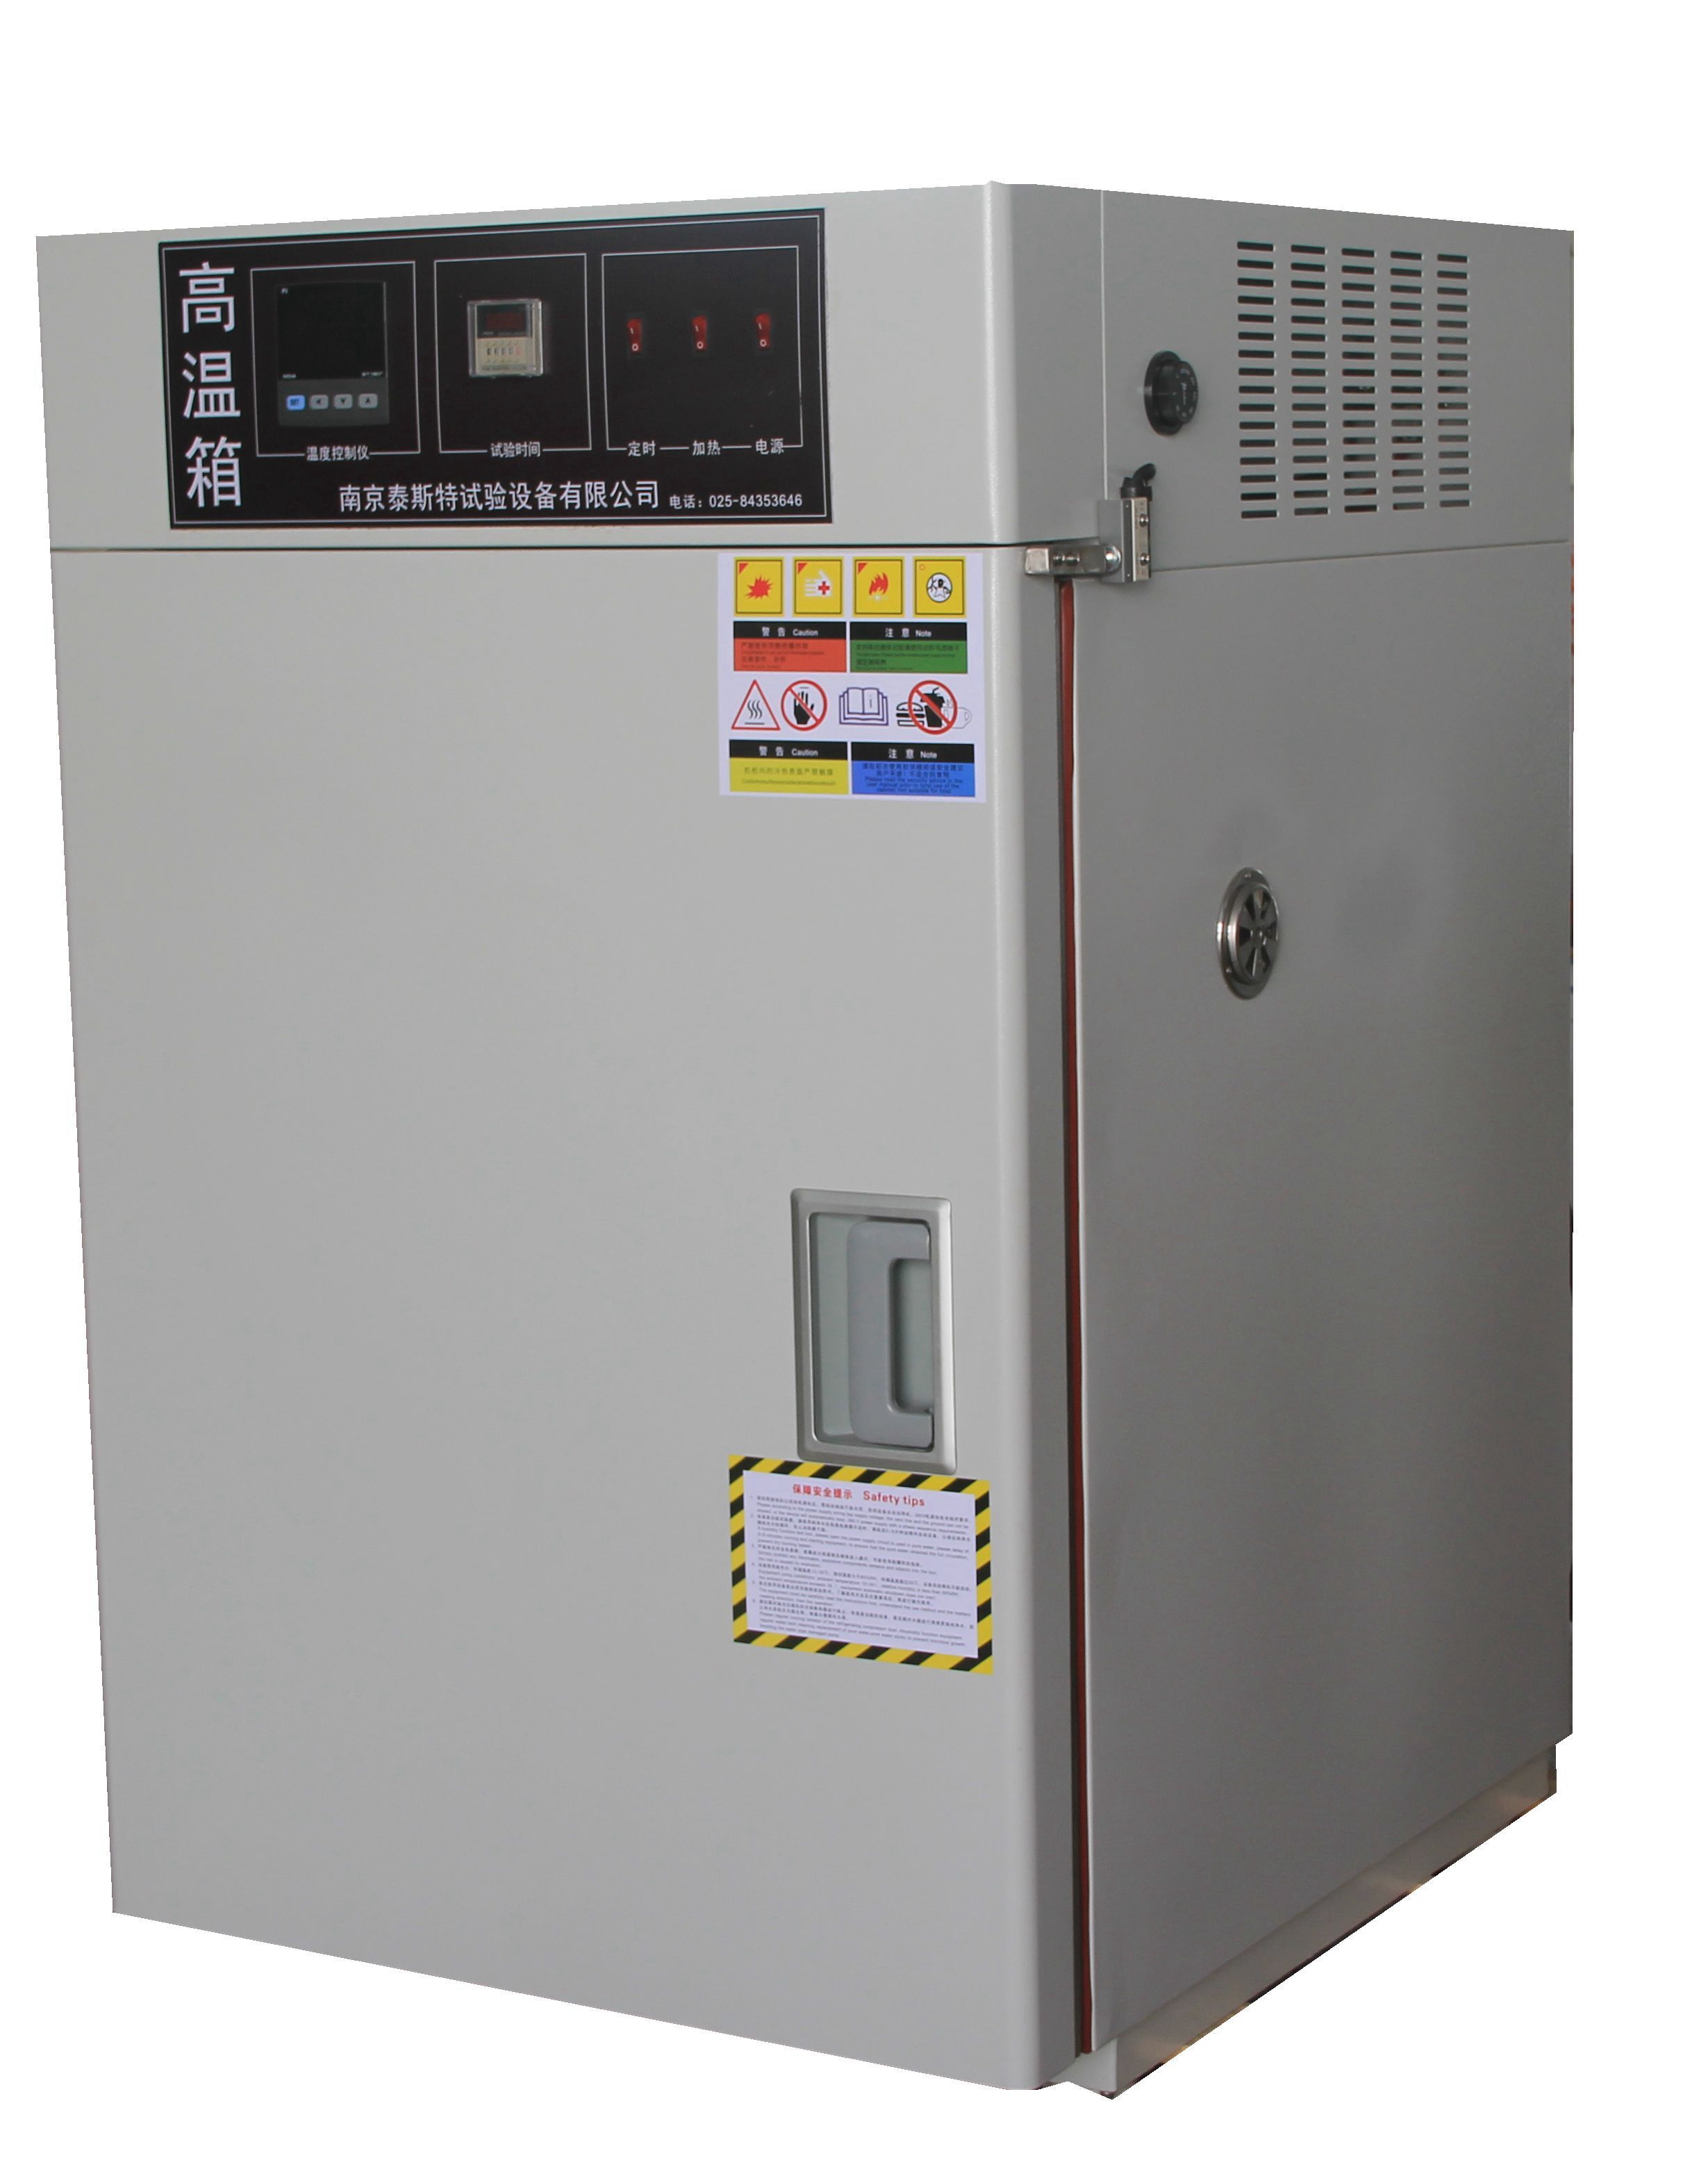 高温恒温箱 恒温恒湿箱 高温老化箱适用于测试和确定电工,电子及其他